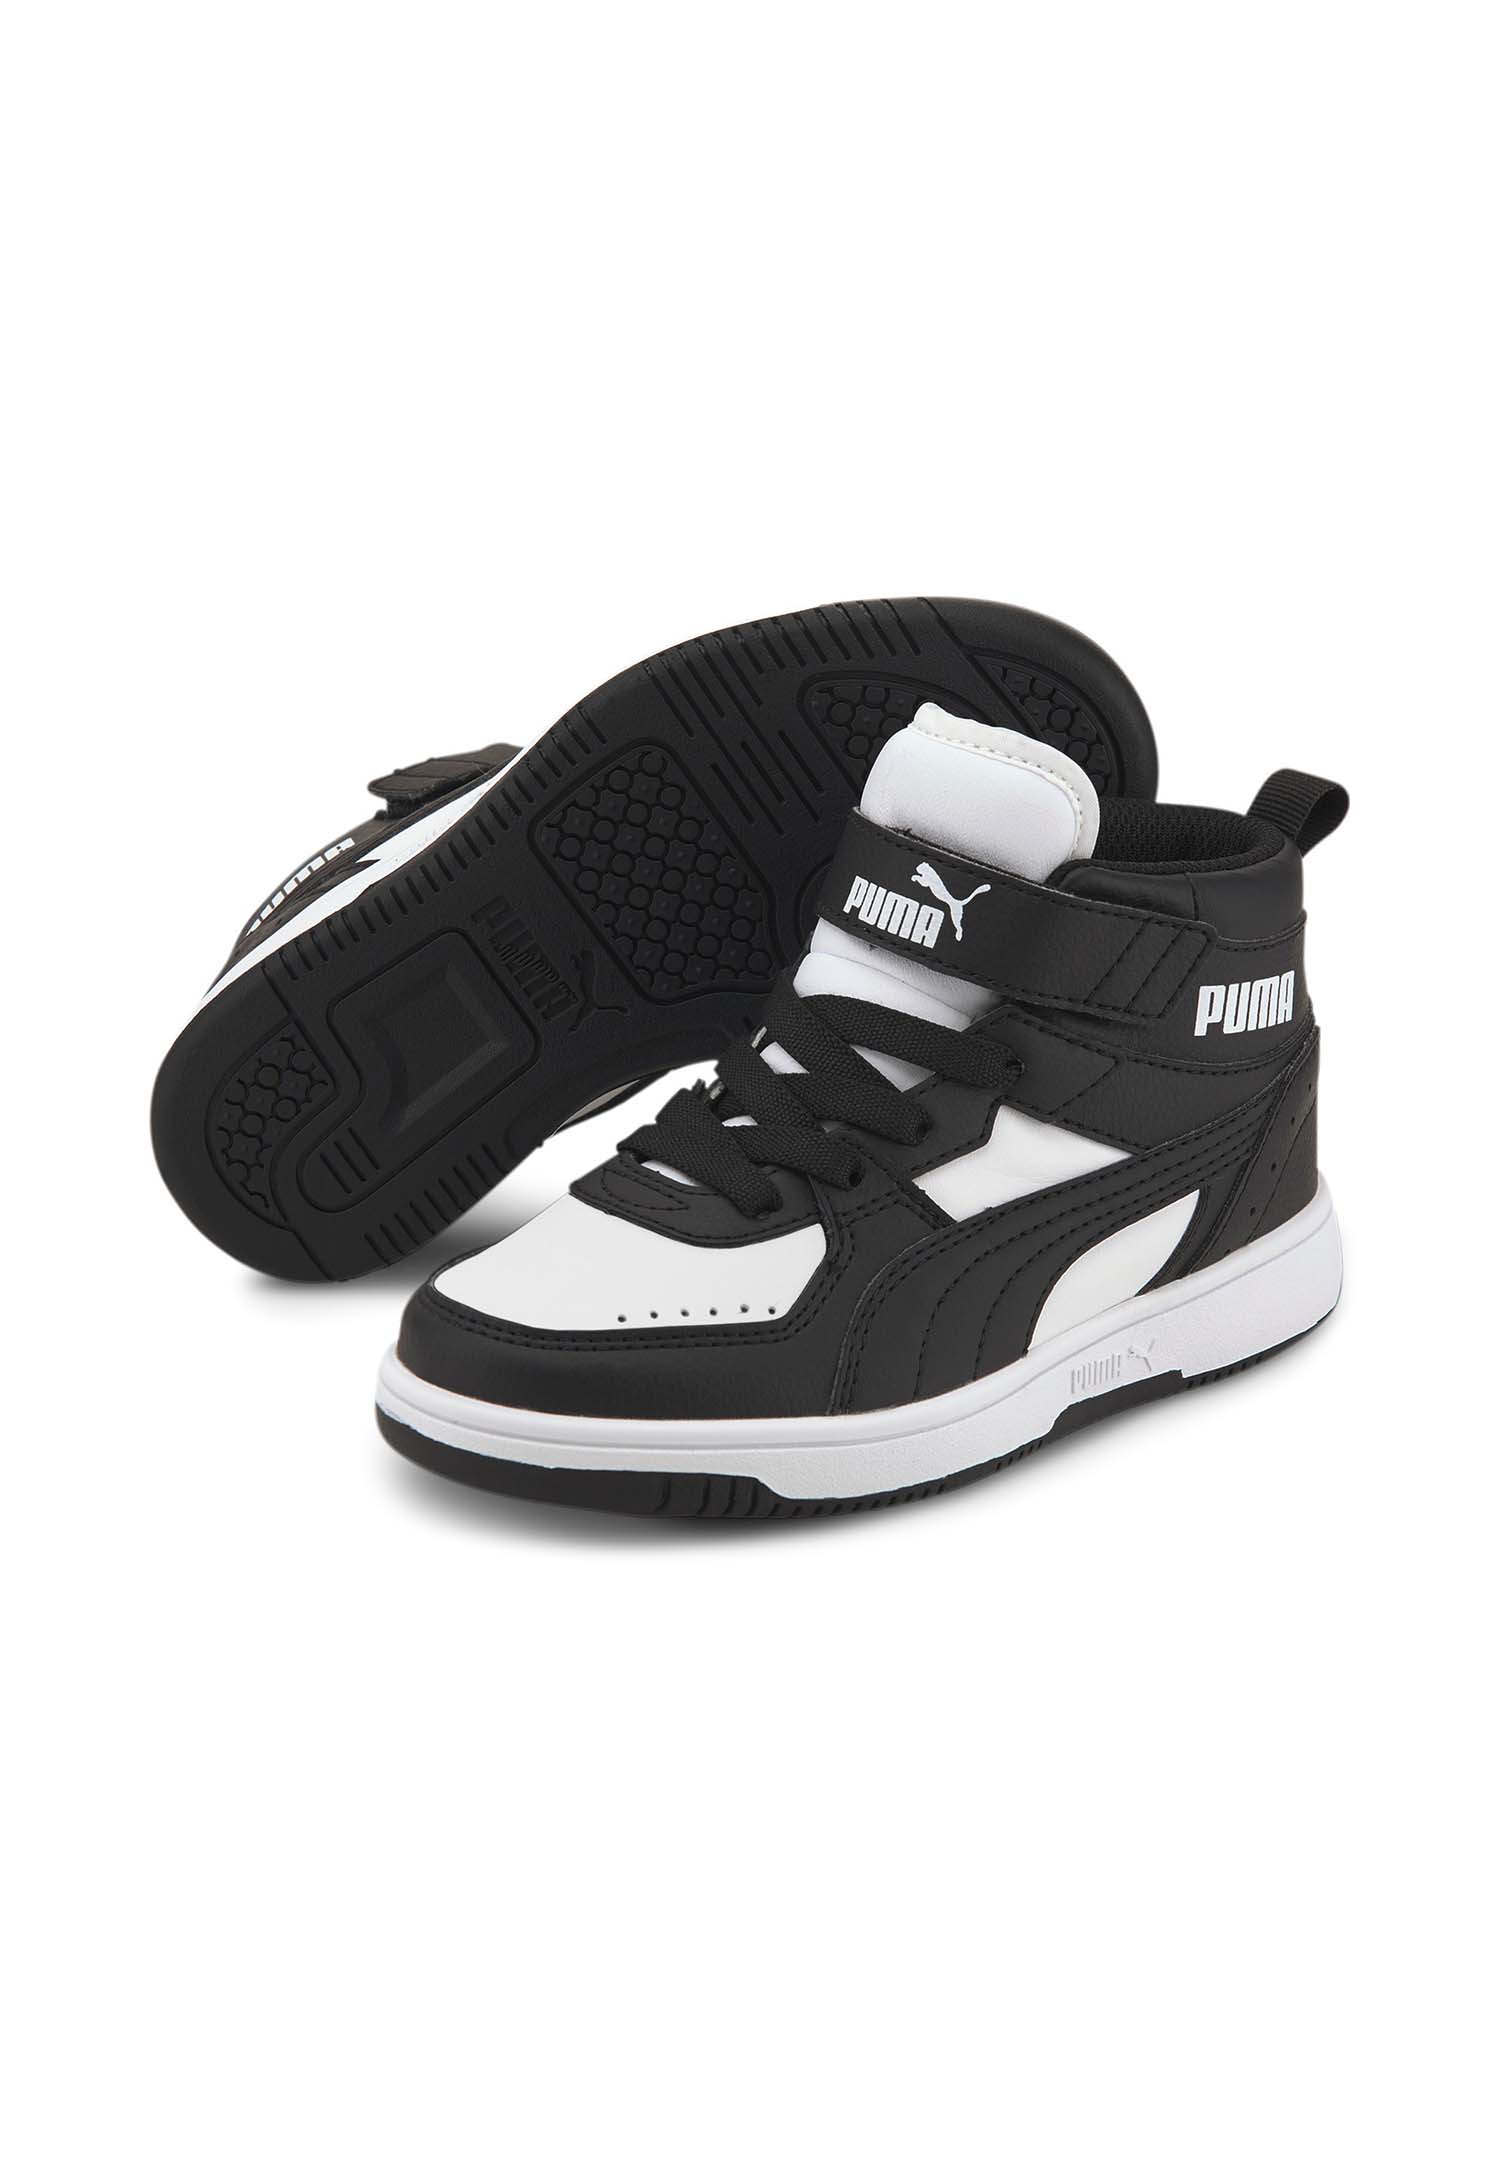 PUMA Rebound Joy AC PS Kinder Sneaker Sportschuhe 374688 Schwarz